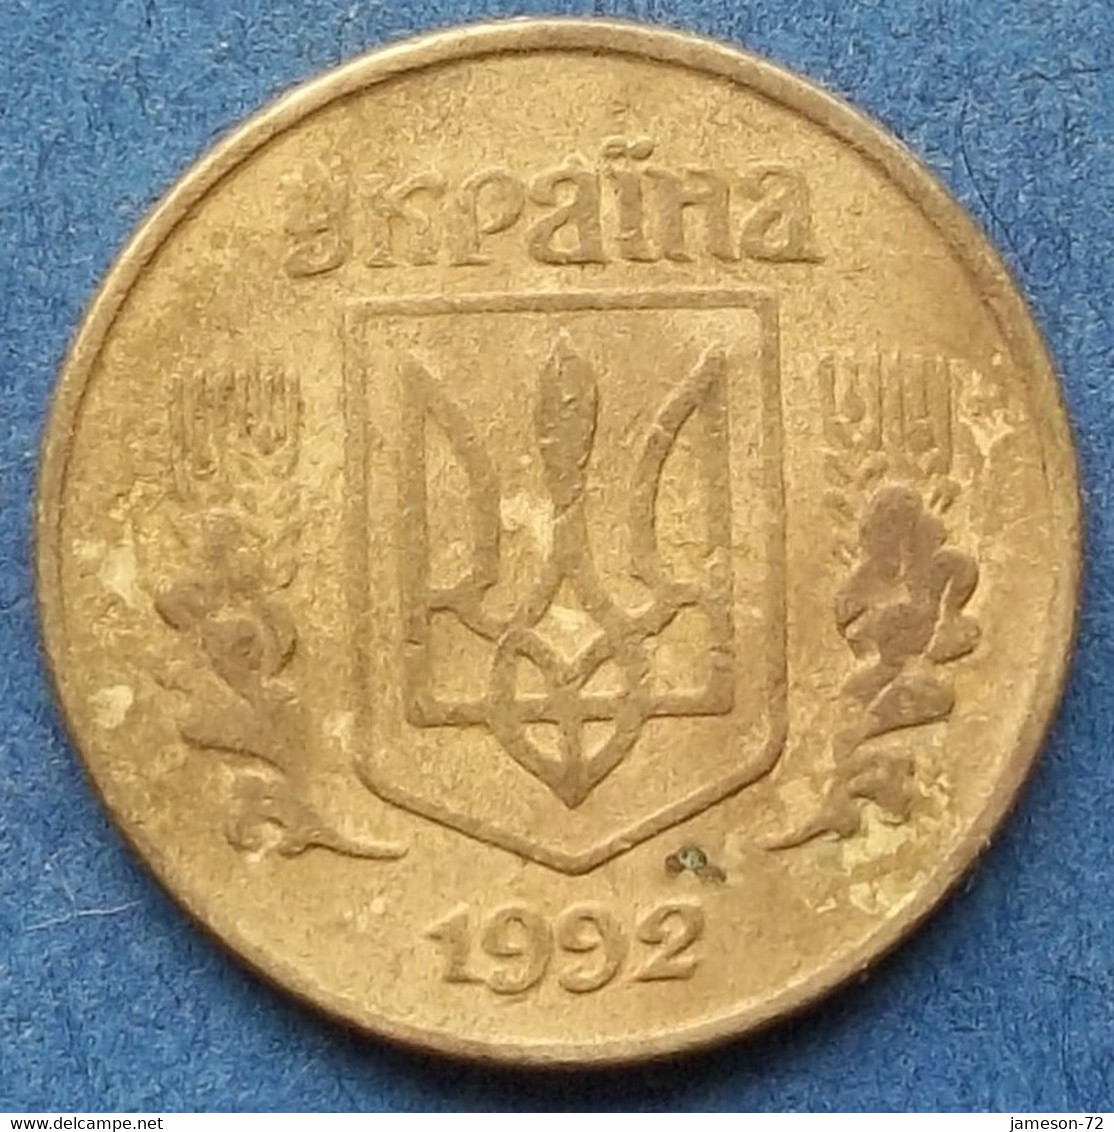 UKRAINE - 10 Kopiyok 1992 KM# 1.1a Reform Coinage (1996) - Edelweiss Coins - Ukraine